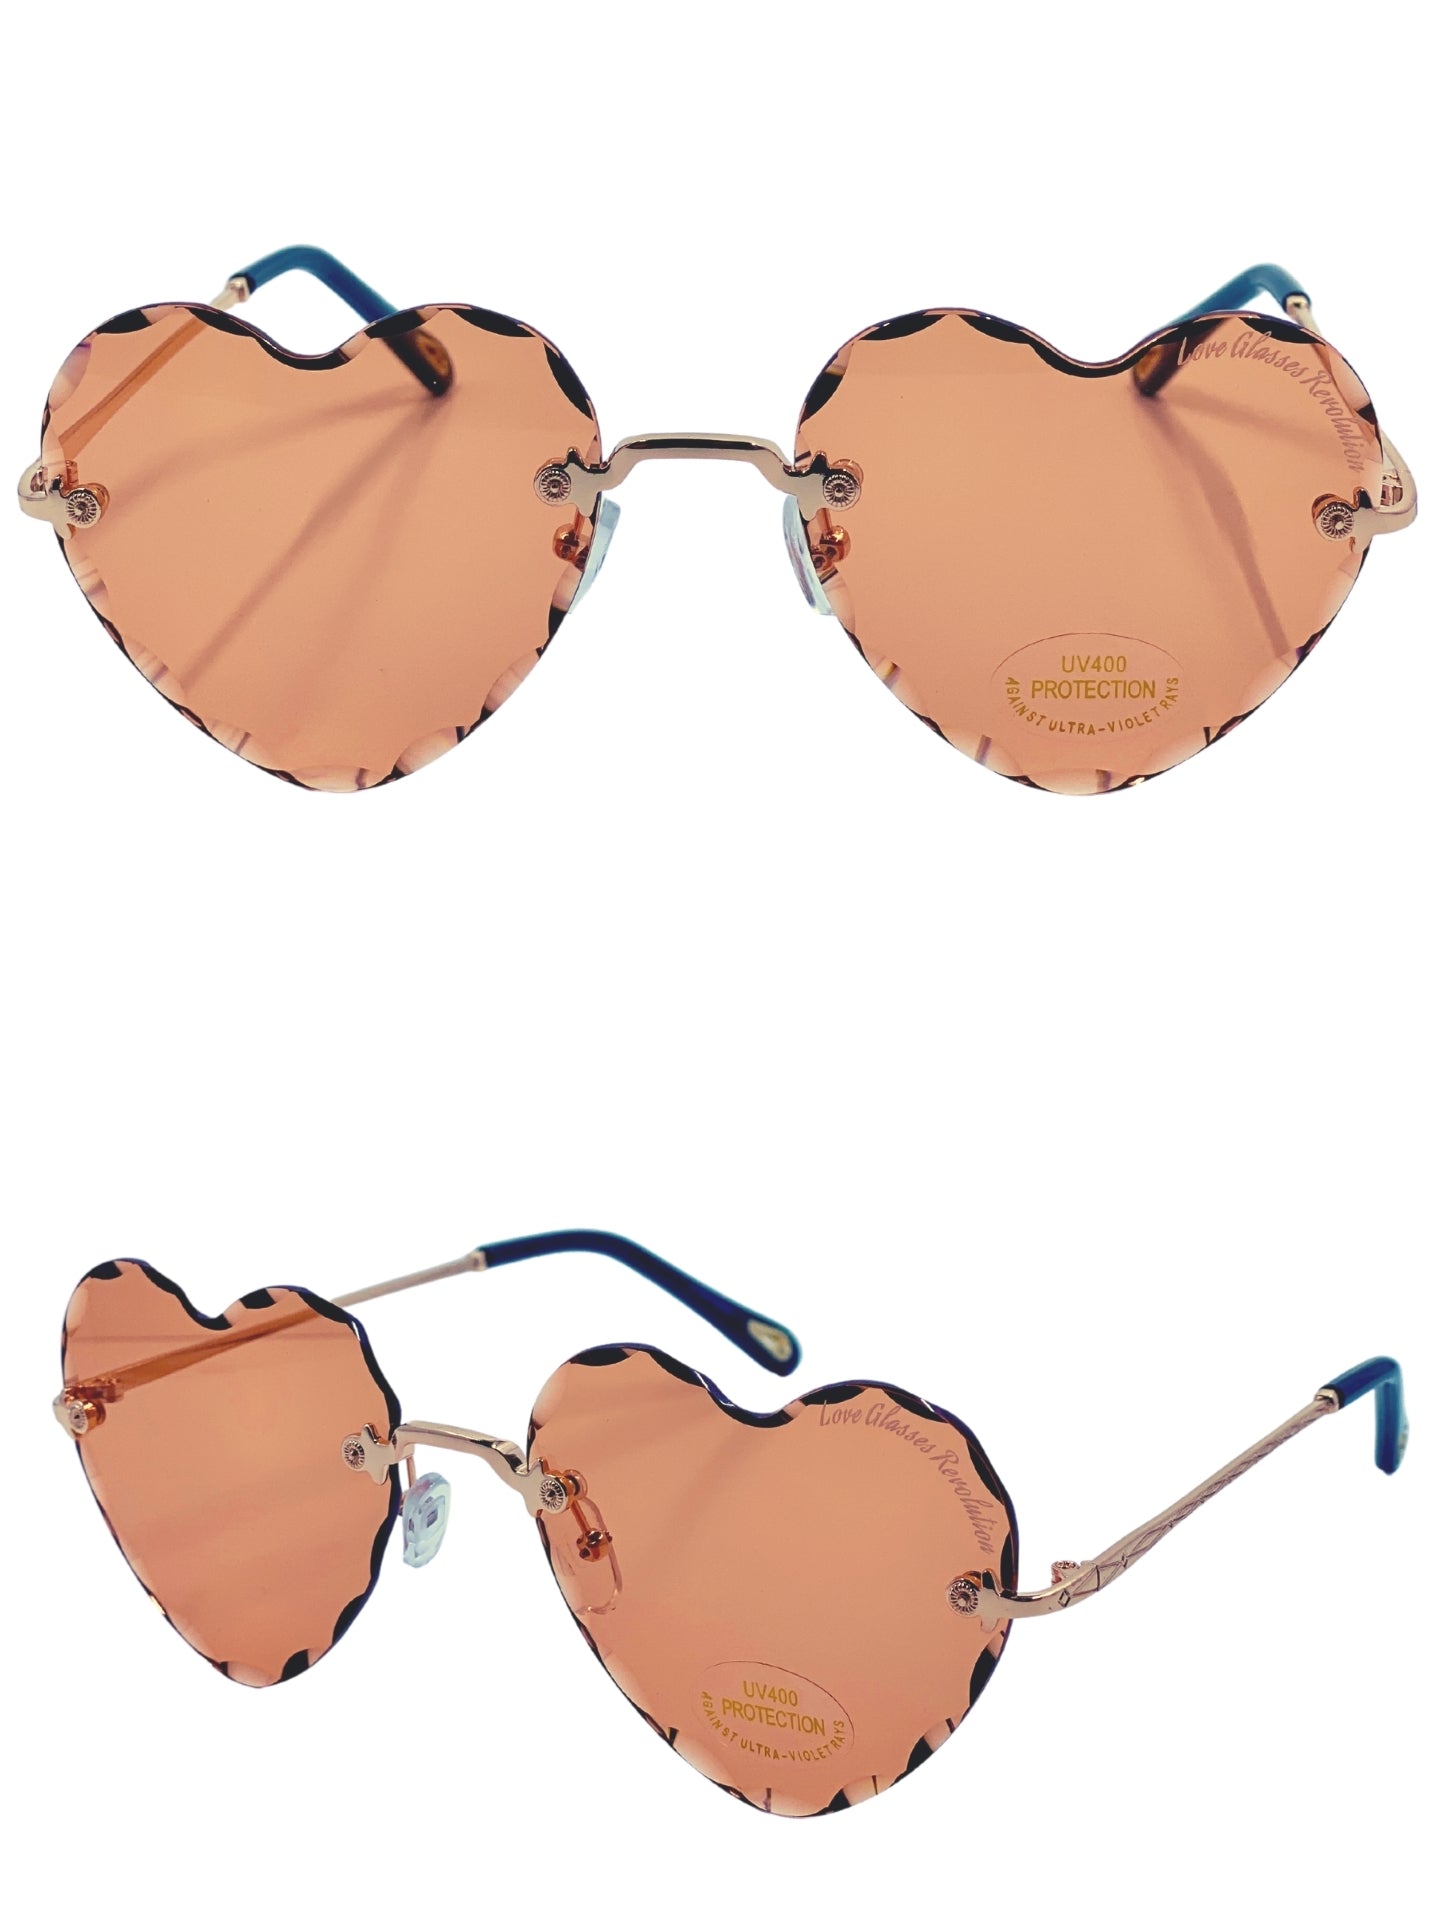 Beveled Frameless - Love Glasses Revolution - Heart Shaped eyewear